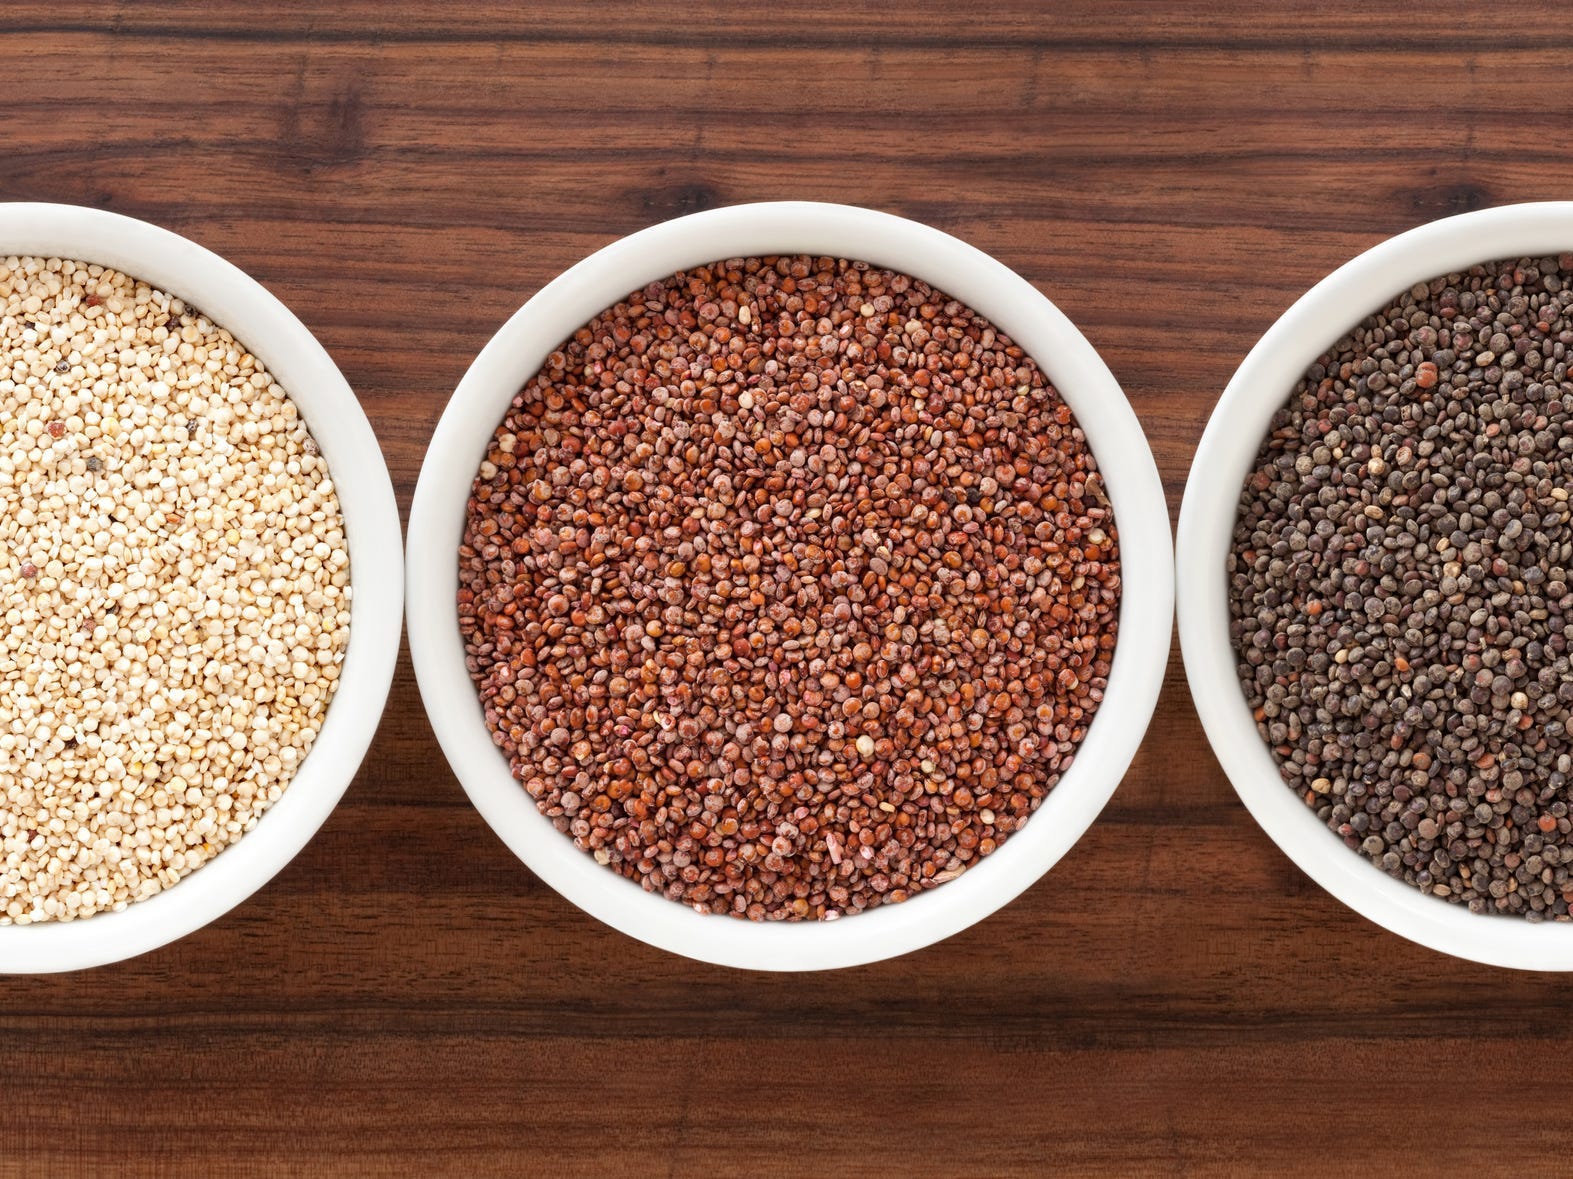 Red, white, and black quinoa.